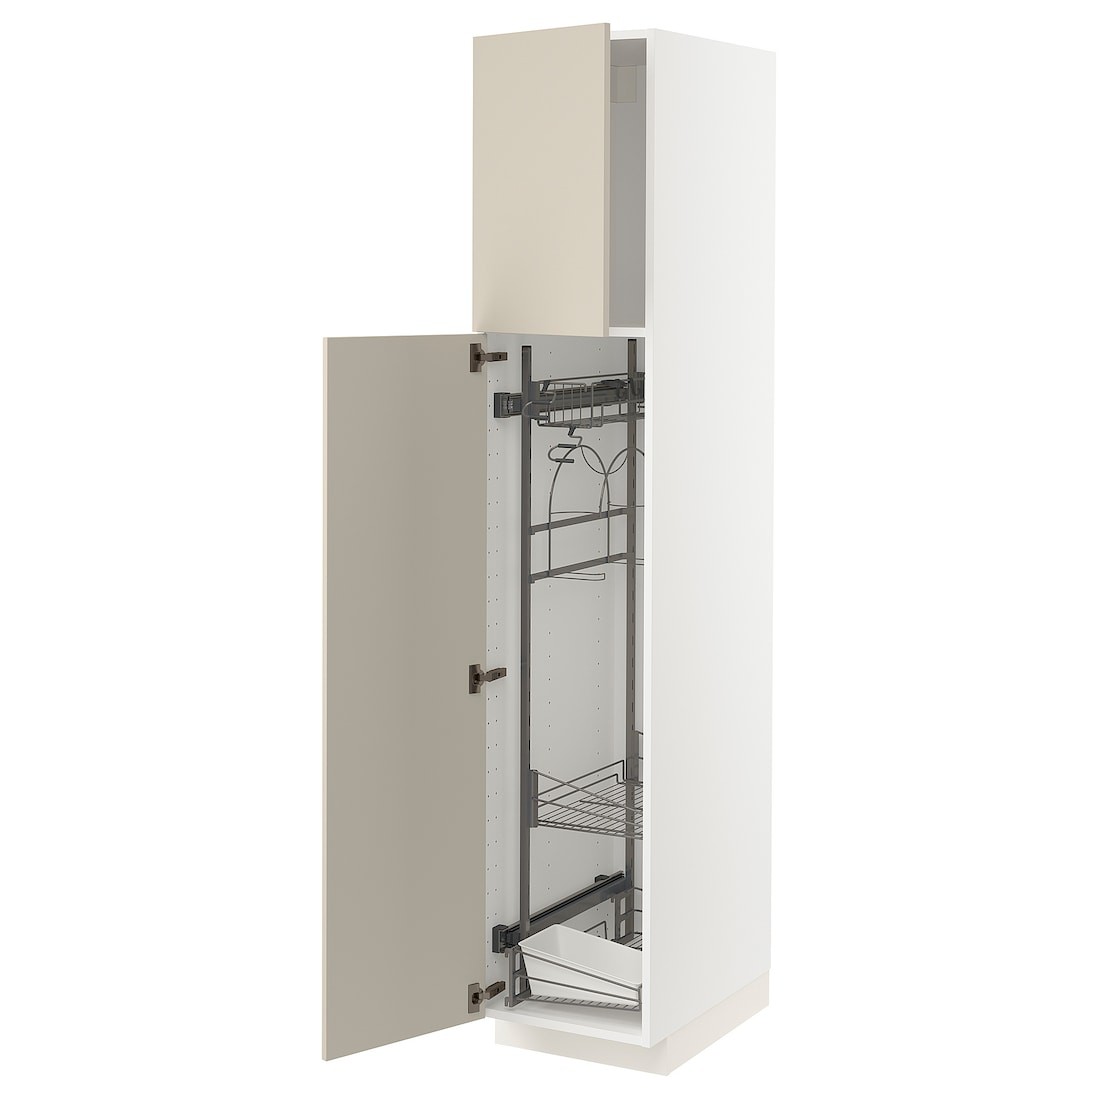 METOD МЕТОД Висока шафа з відділенням для аксесуарів для прибирання, білий / Havstorp бежевий, 40x60x200 см